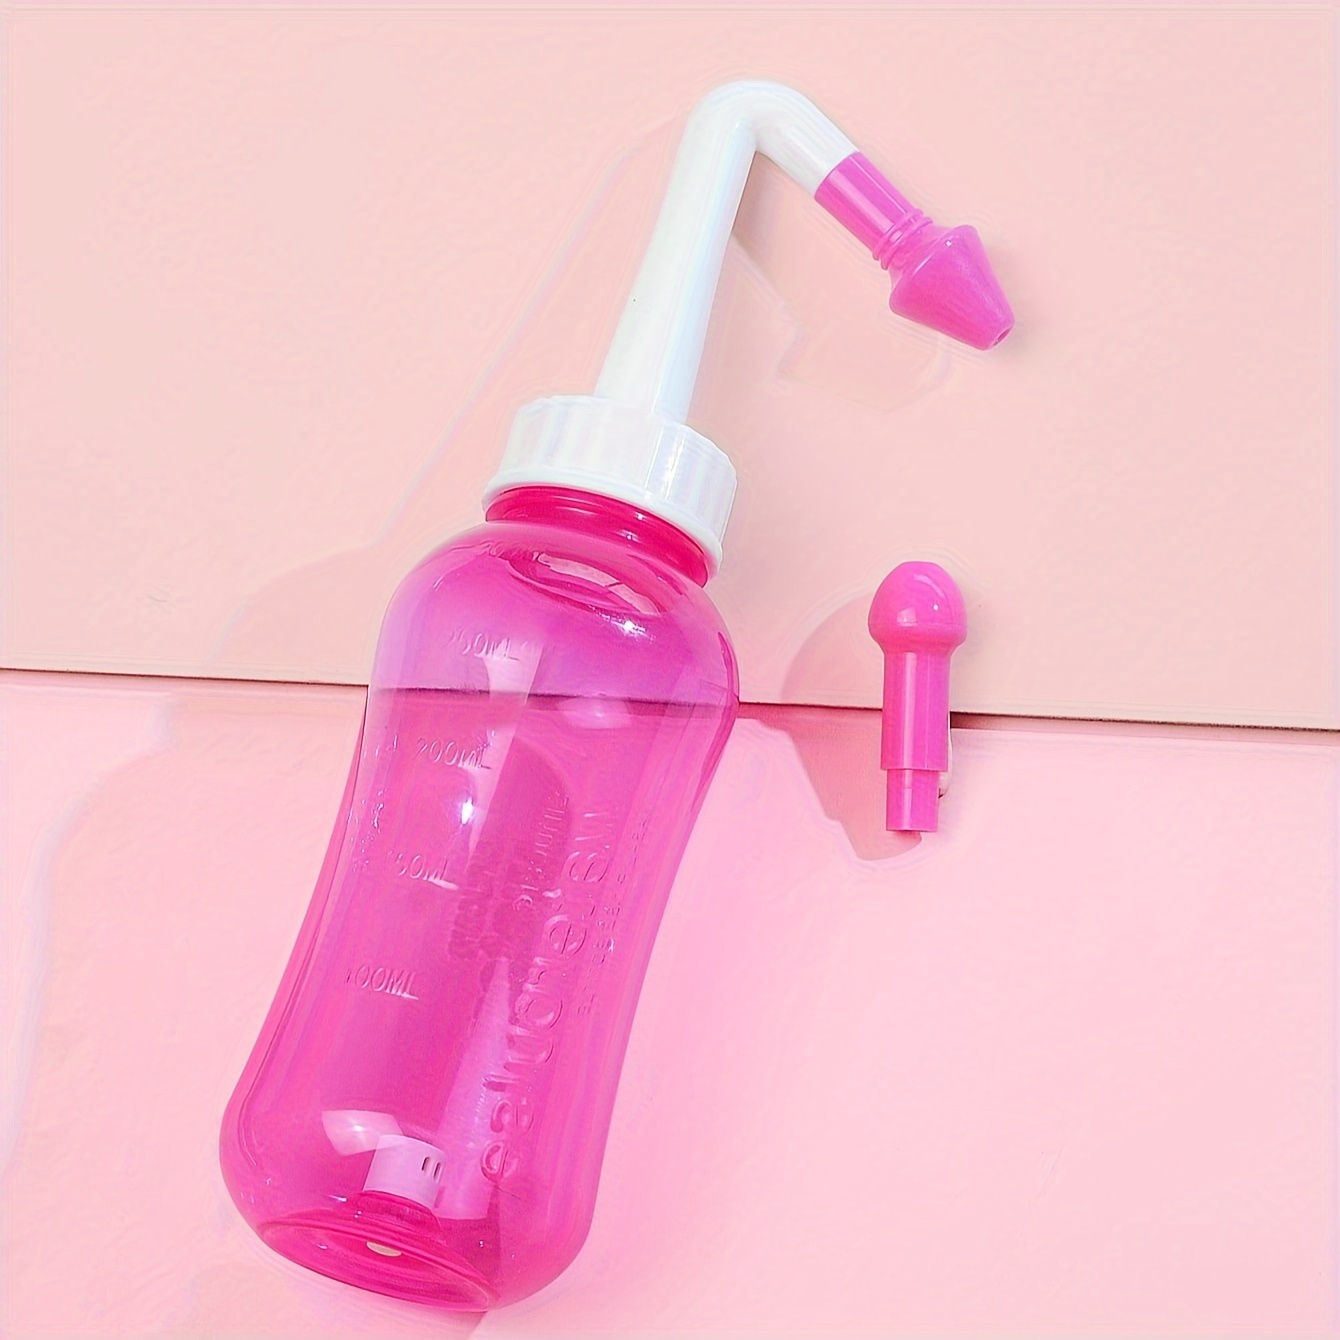 Mumusuki Botella de enjuague nasal de 10.1 fl oz, botella de lavado nasal  para limpieza de pasajes nasales y senos nasales para adultos y niños  (nariz